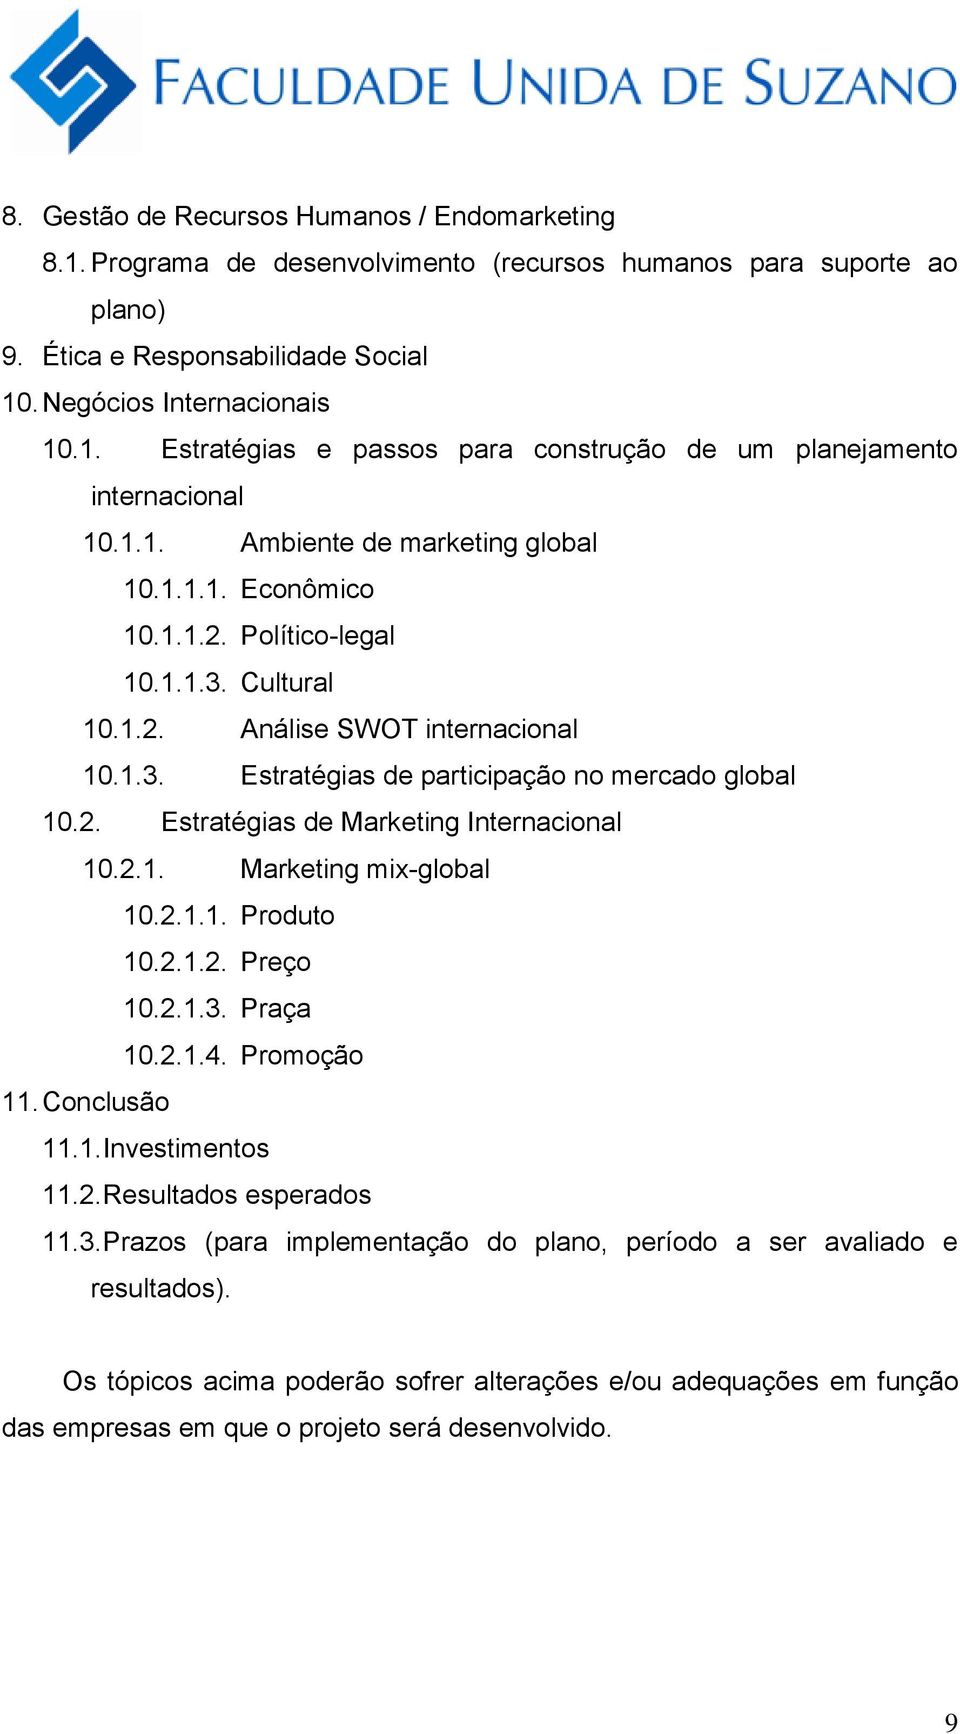 2.1. Marketing mix-global 10.2.1.1. Produto 10.2.1.2. Preço 10.2.1.3. Praça 10.2.1.4. Promoção 11. Conclusão 11.1. Investimentos 11.2. Resultados esperados 11.3. Prazos (para implementação do plano, período a ser avaliado e resultados).